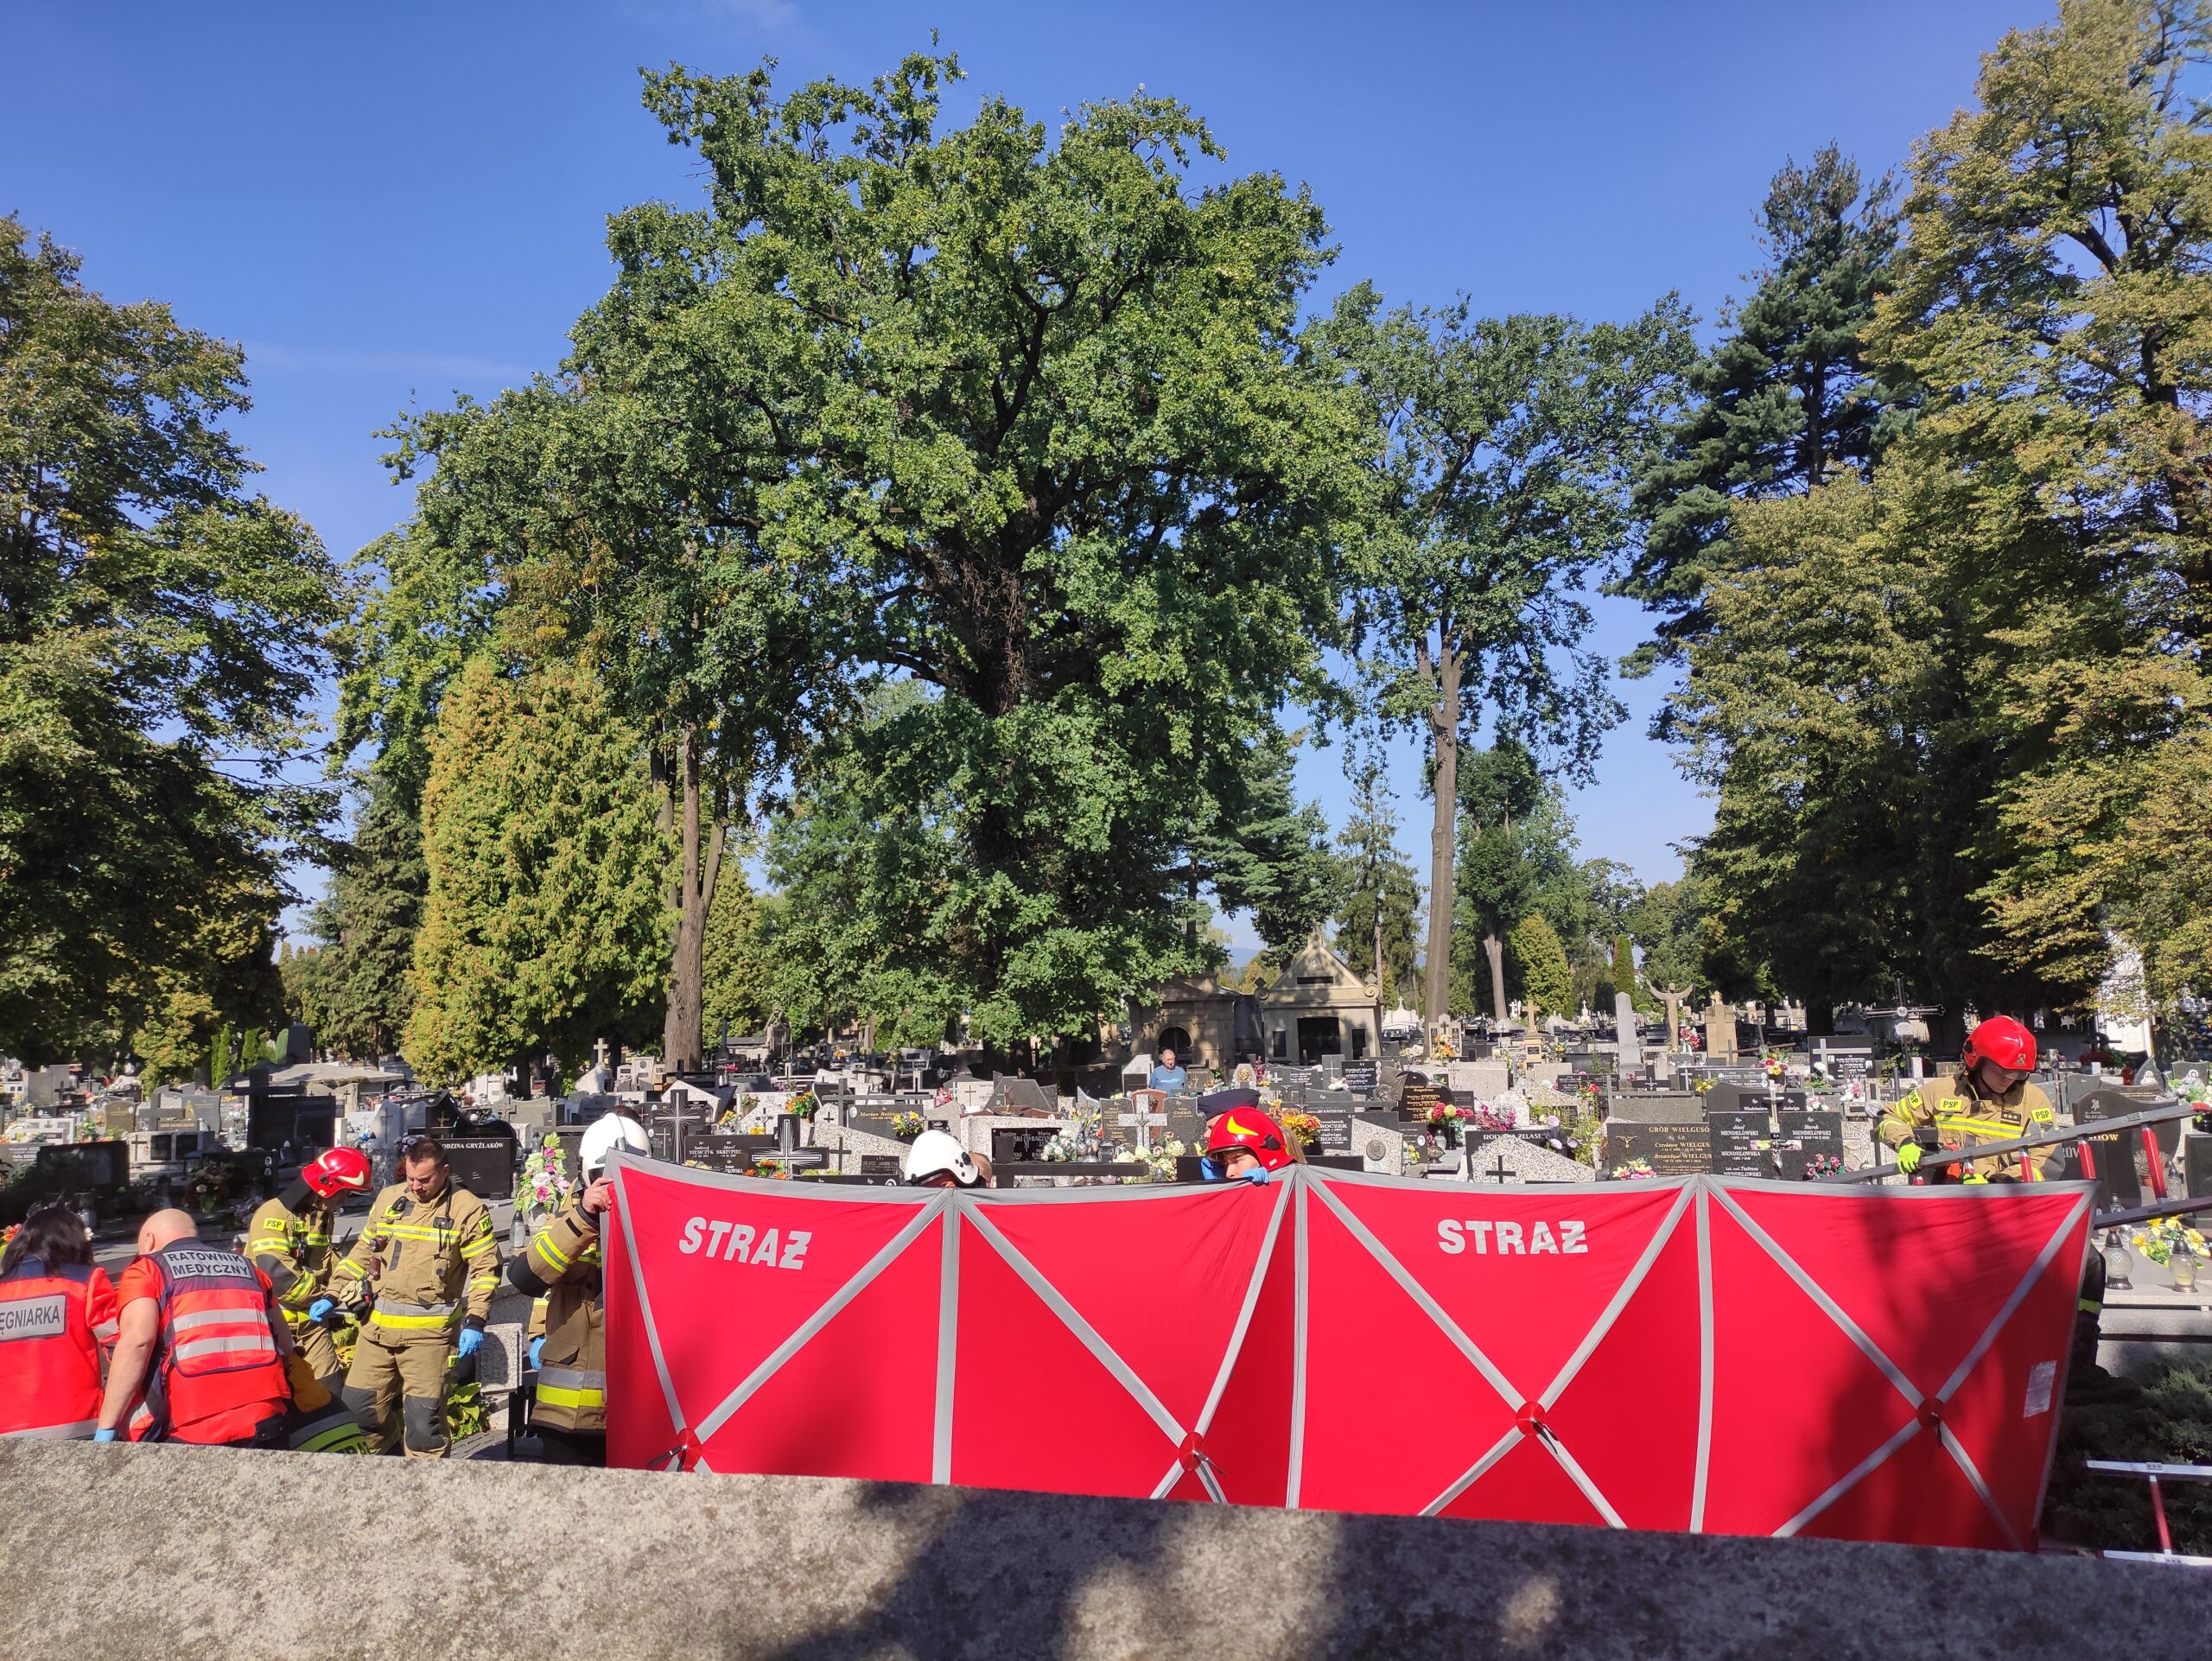 Akcja ratunkowa na cmentarzu, Nowy Sącz